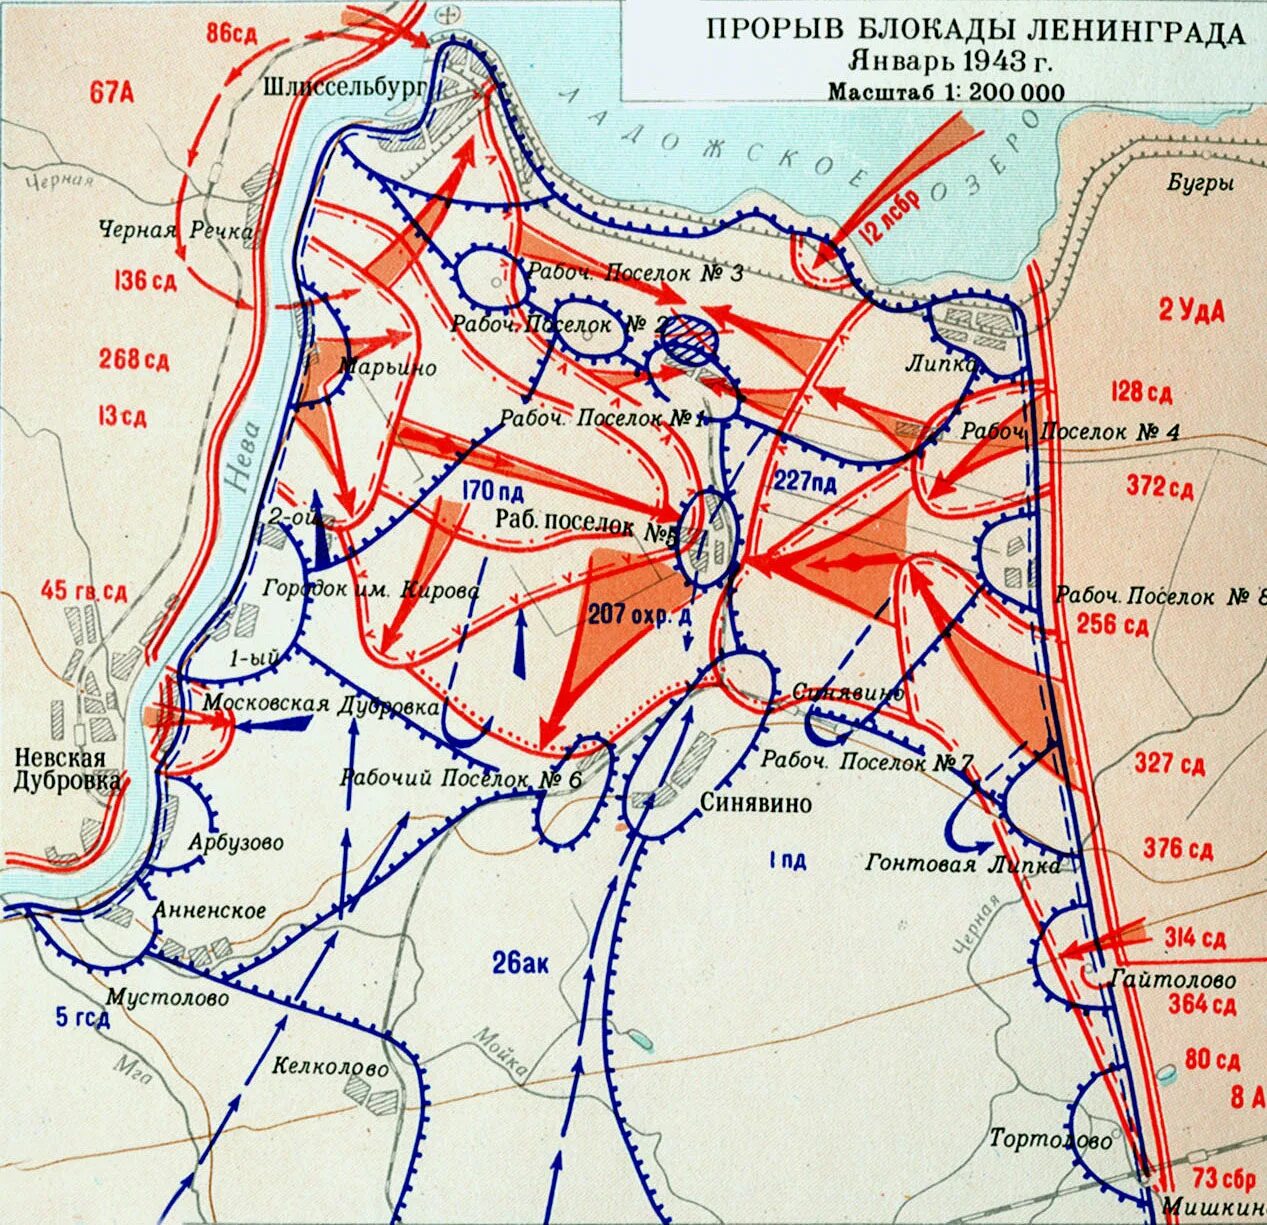 Карта прорыва блокады Ленинграда в 1943 году. Блокада ленинграда кодовое название операции